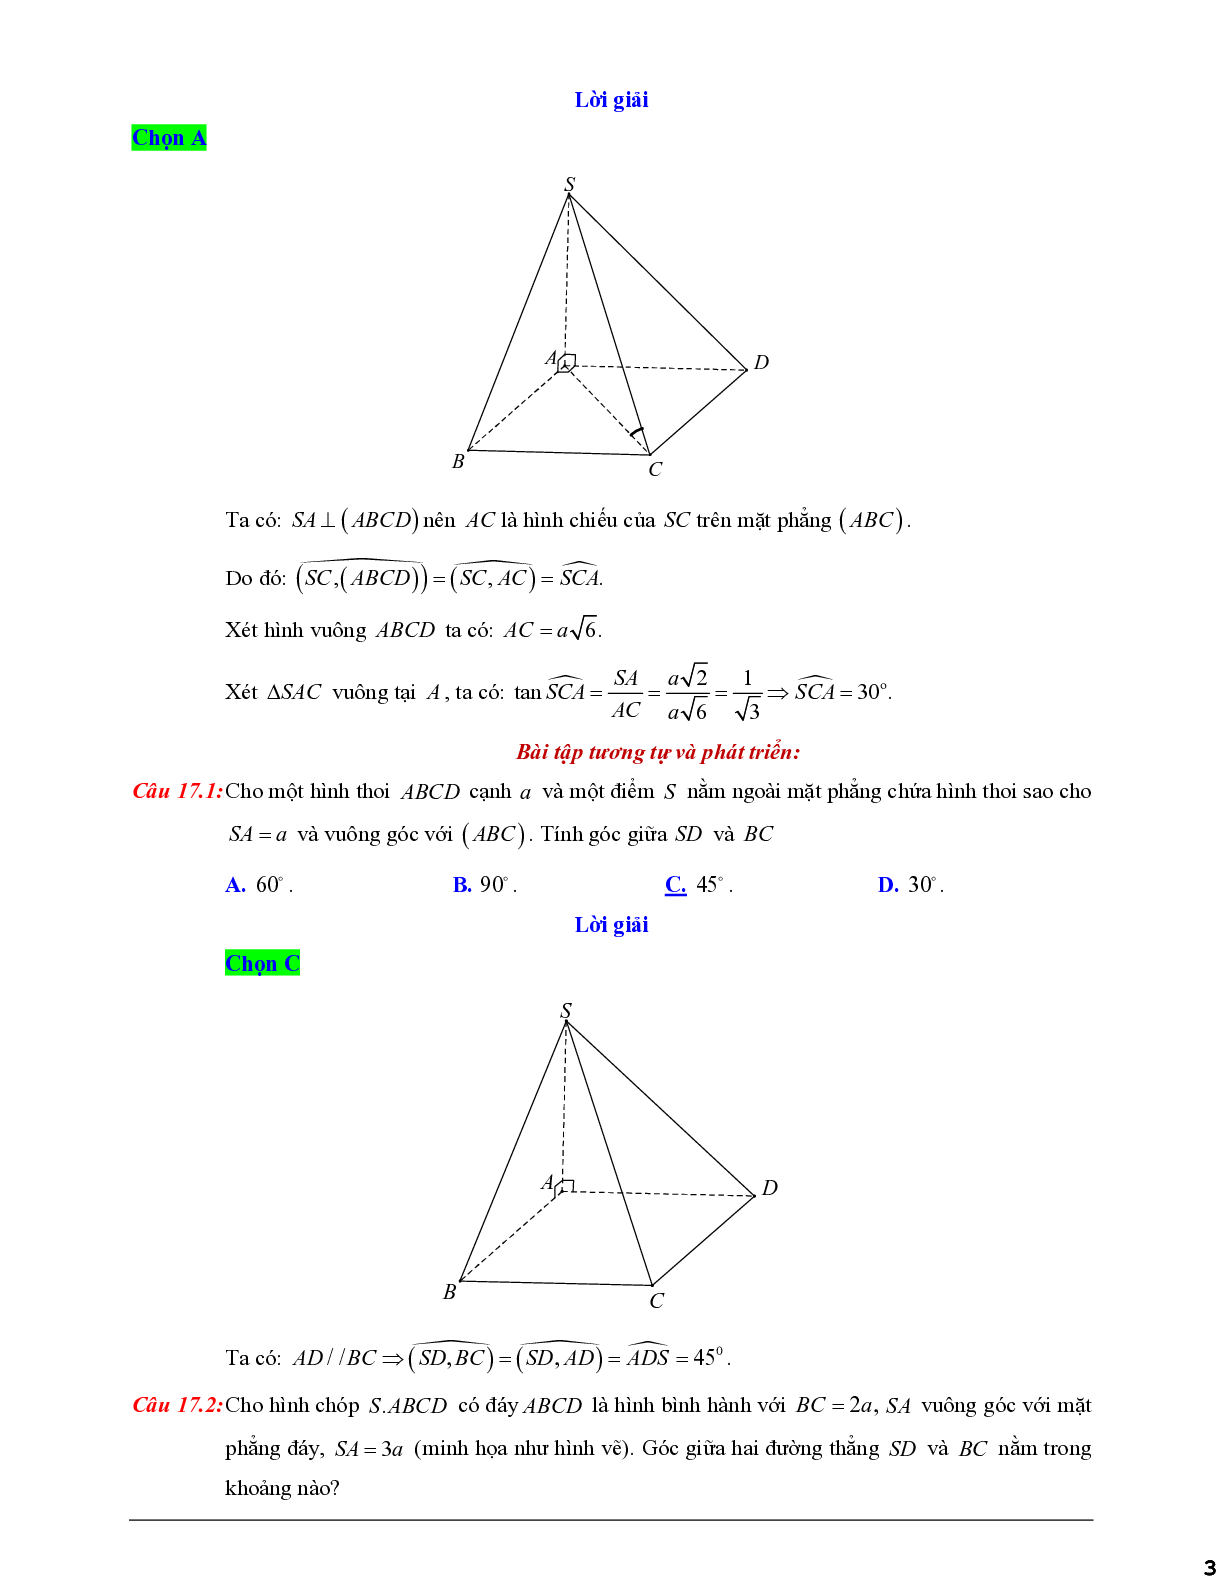 Xác định góc giữa hai đưởng thẳng và mặt phẳng - giữa hai mặt phẳng (trang 3)